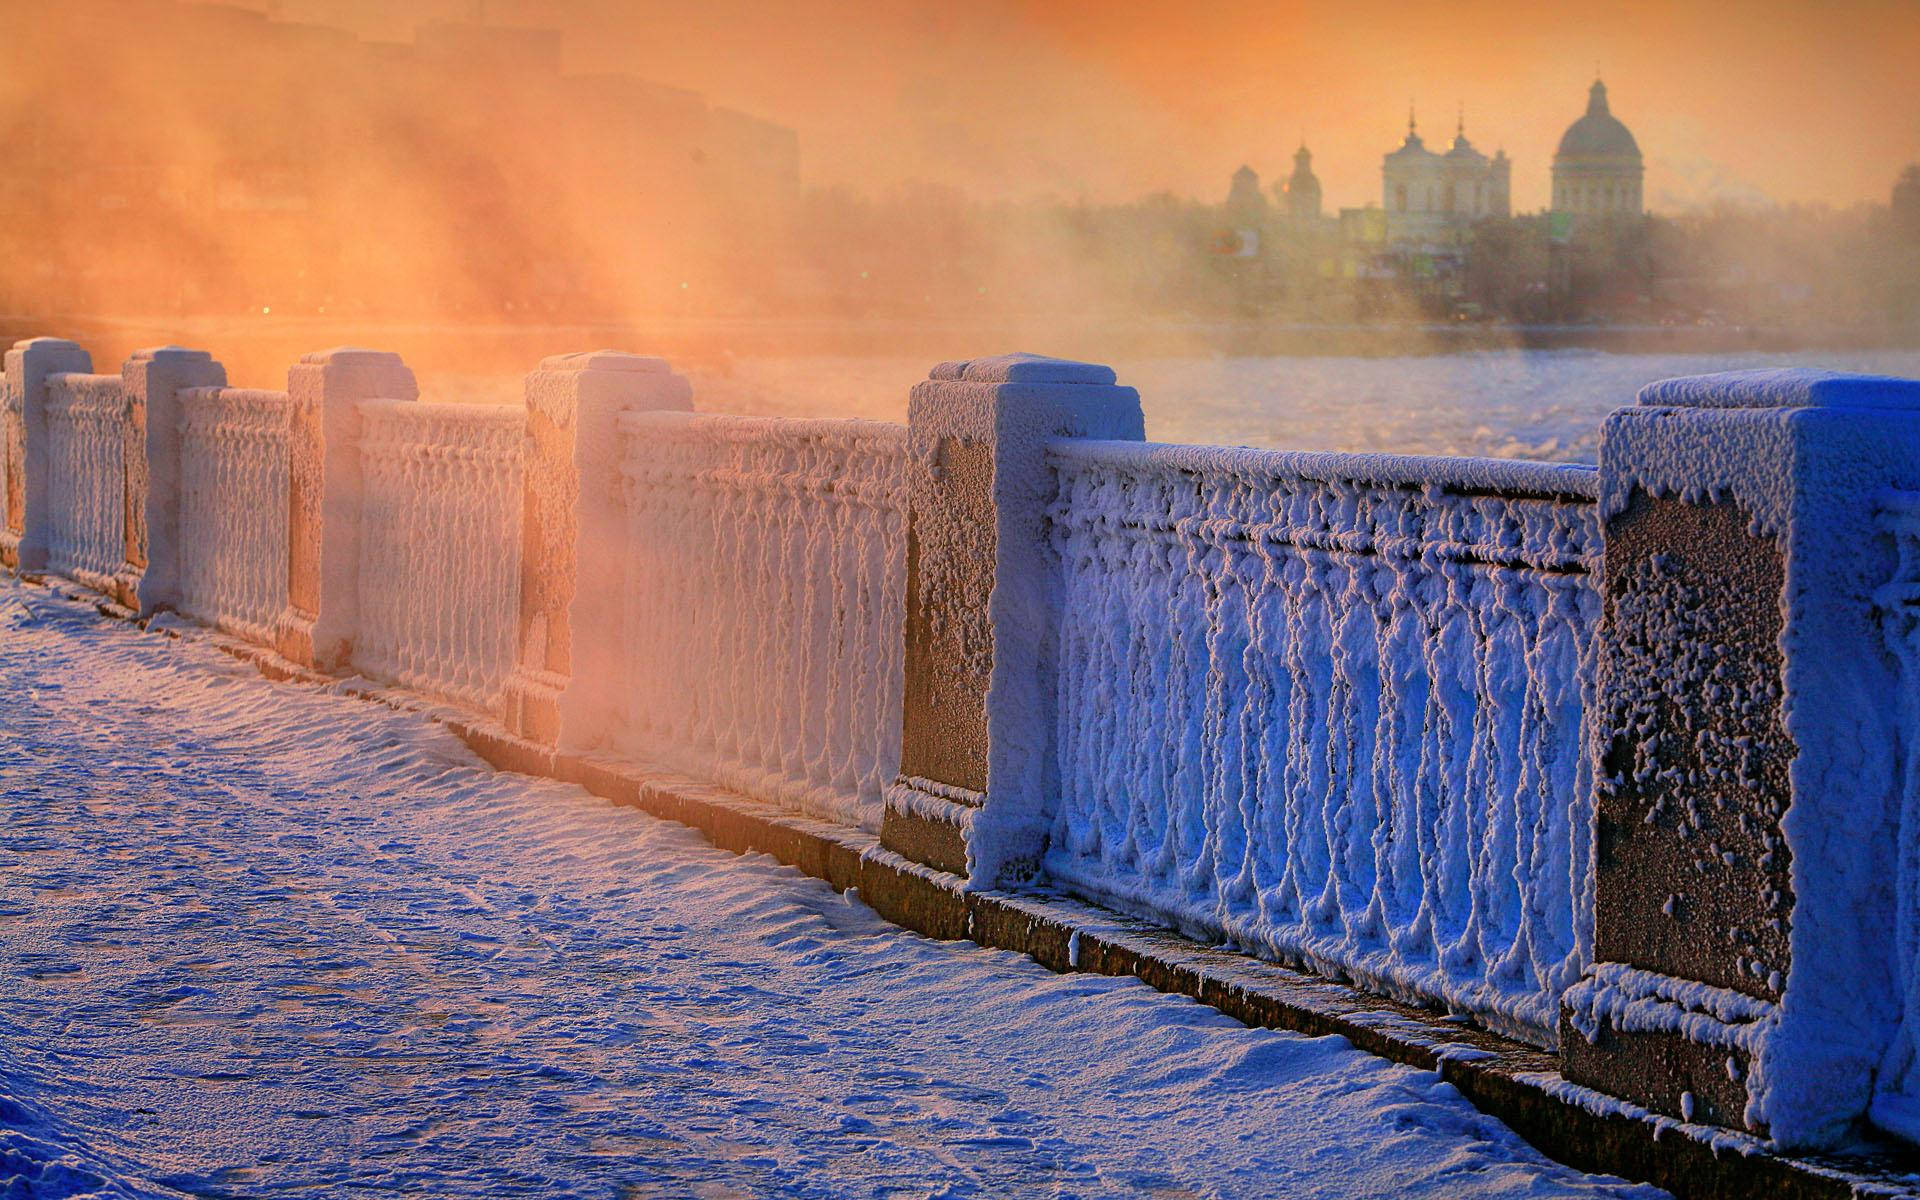 Saint Petersburg In A Winter Season